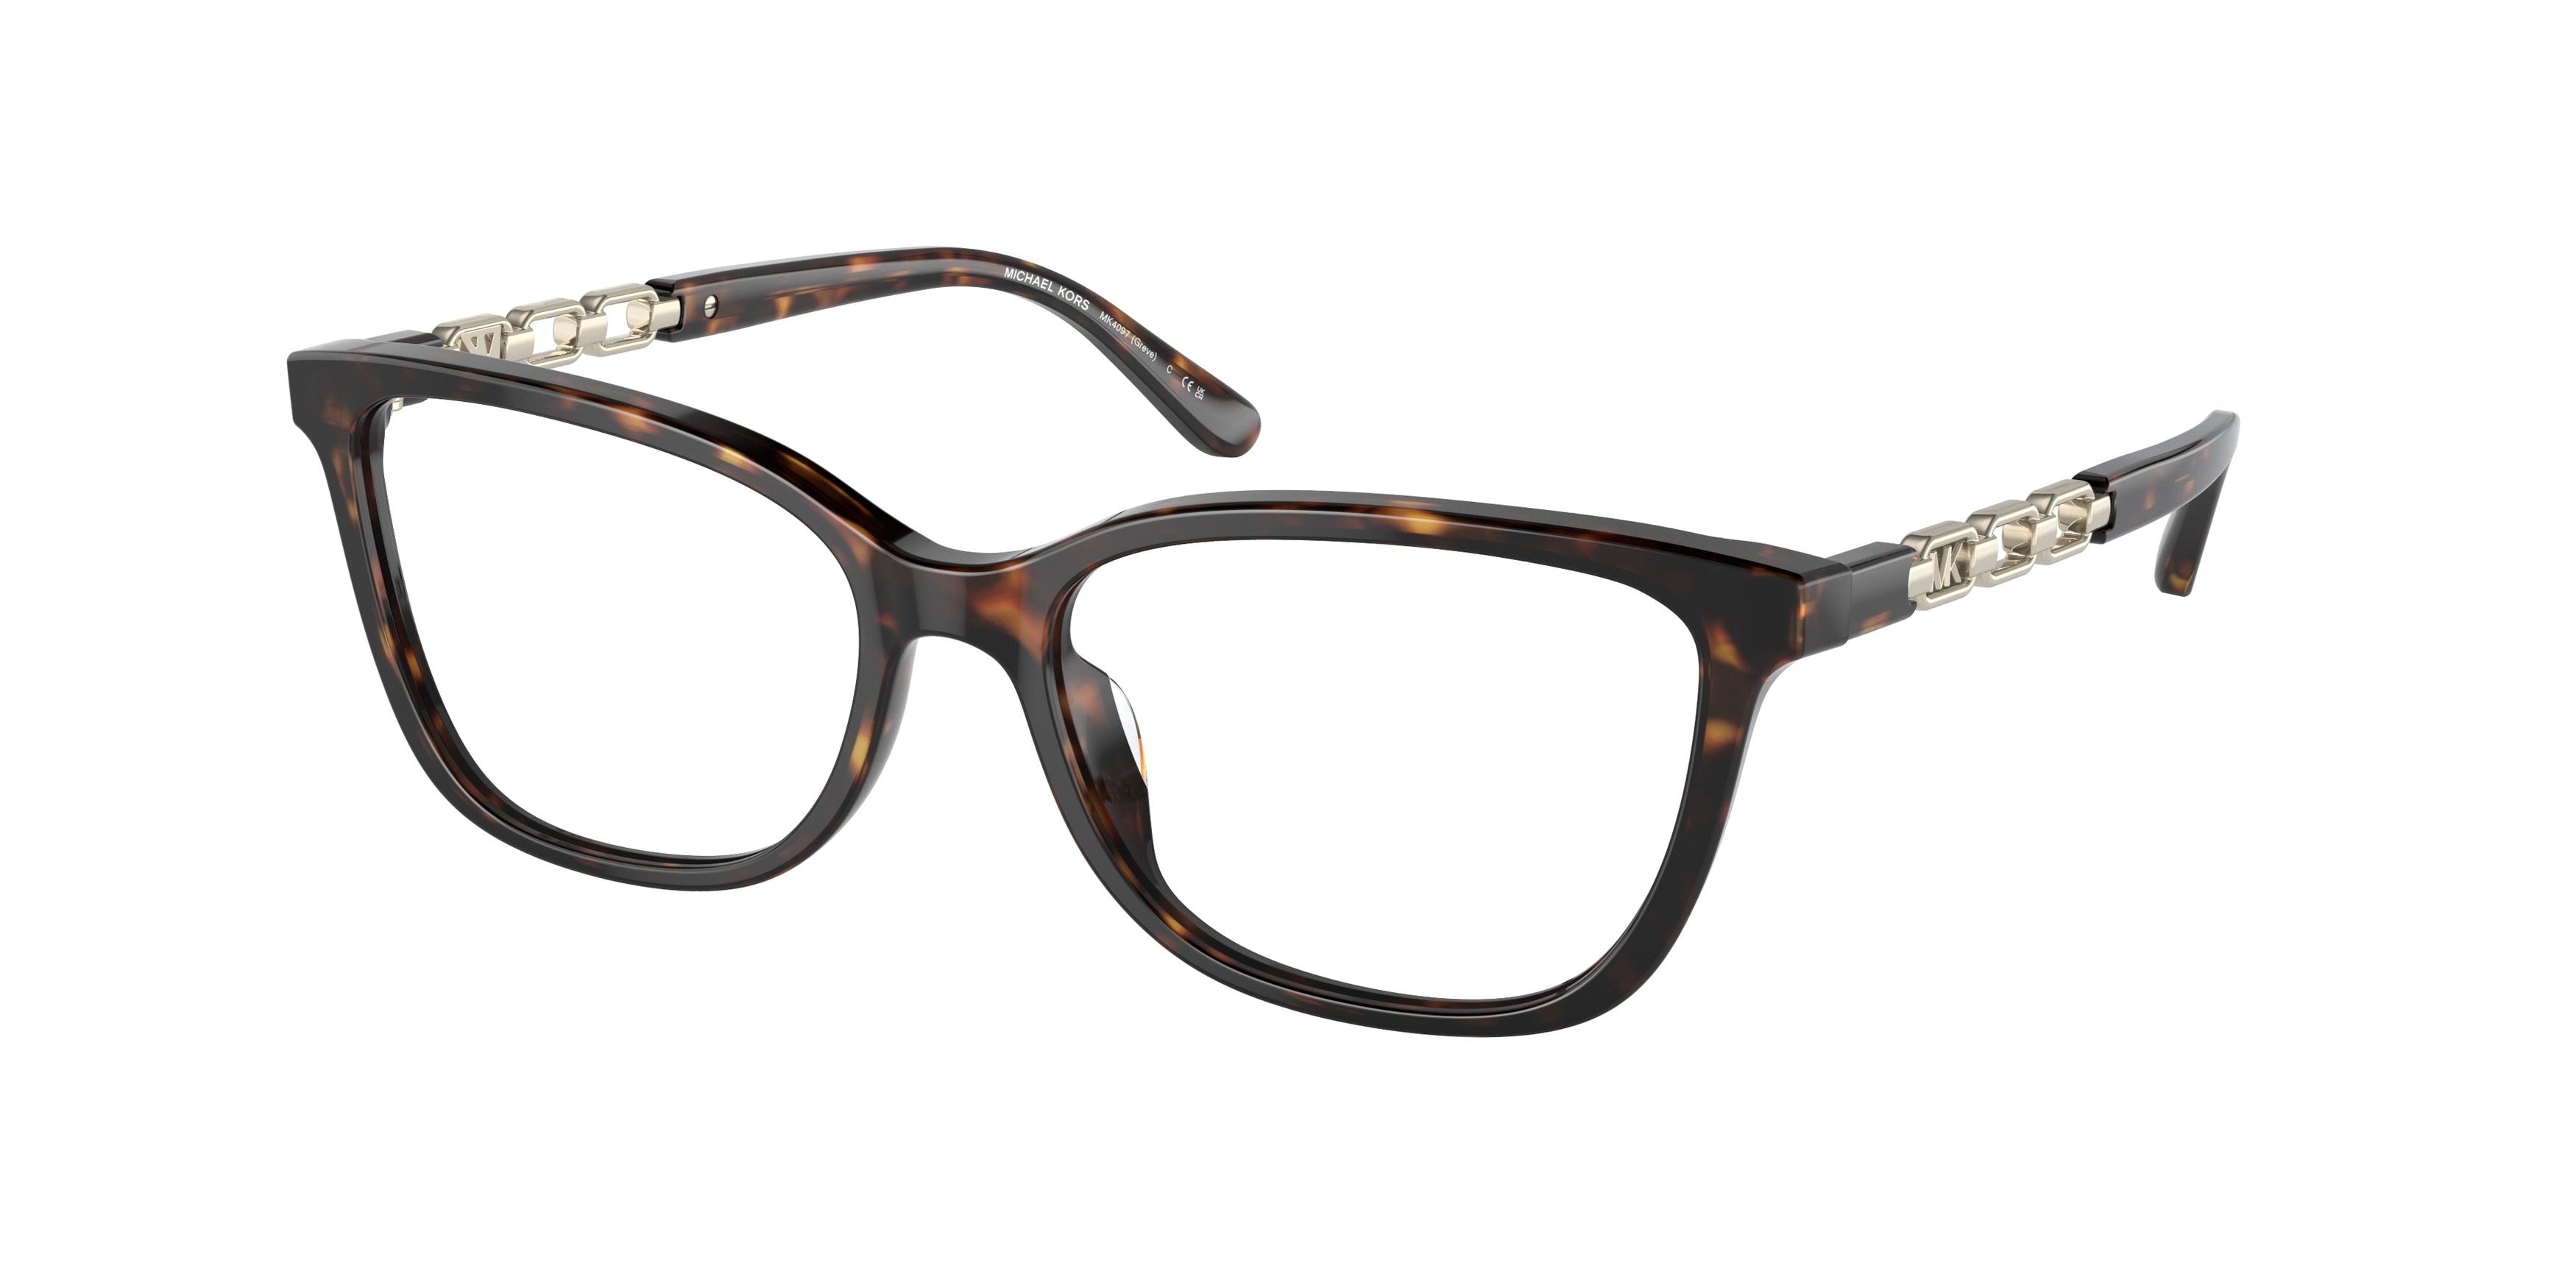 Michael Kors GREVE MK4097 Rectangle Eyeglasses  3006-Dark Tortoise 54-140-16 - Color Map Tortoise